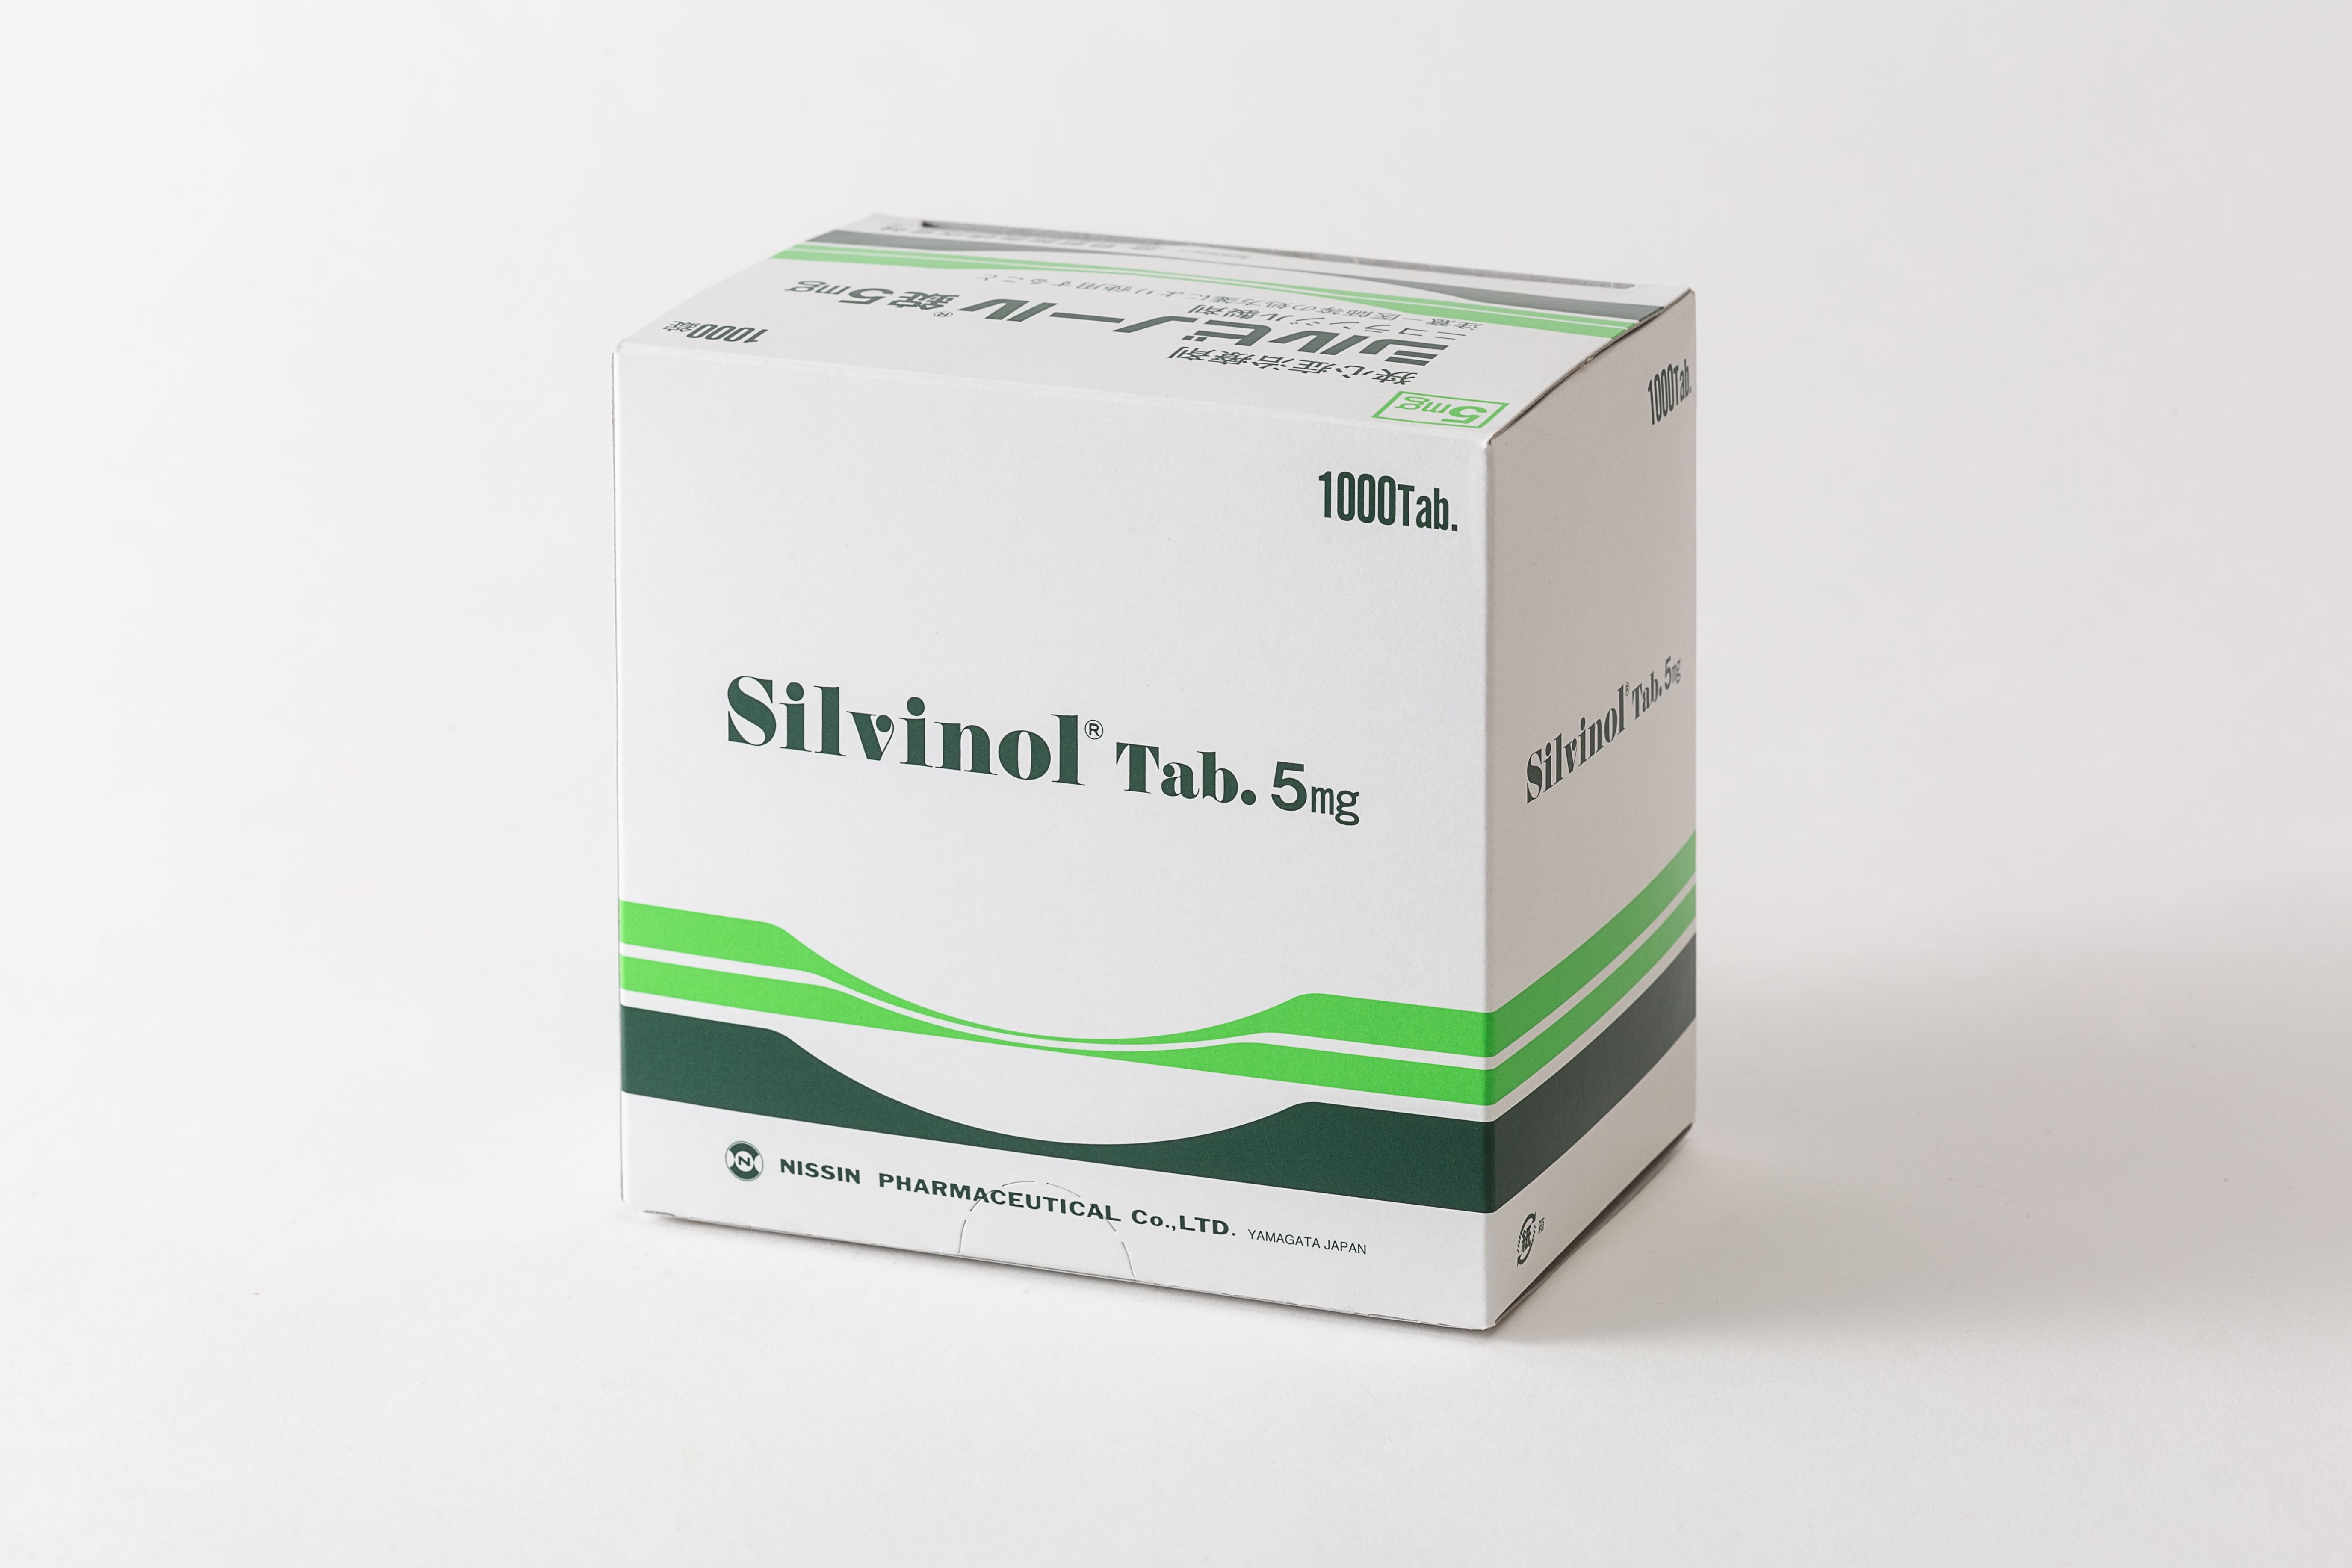 Silvinol tablet 5mg